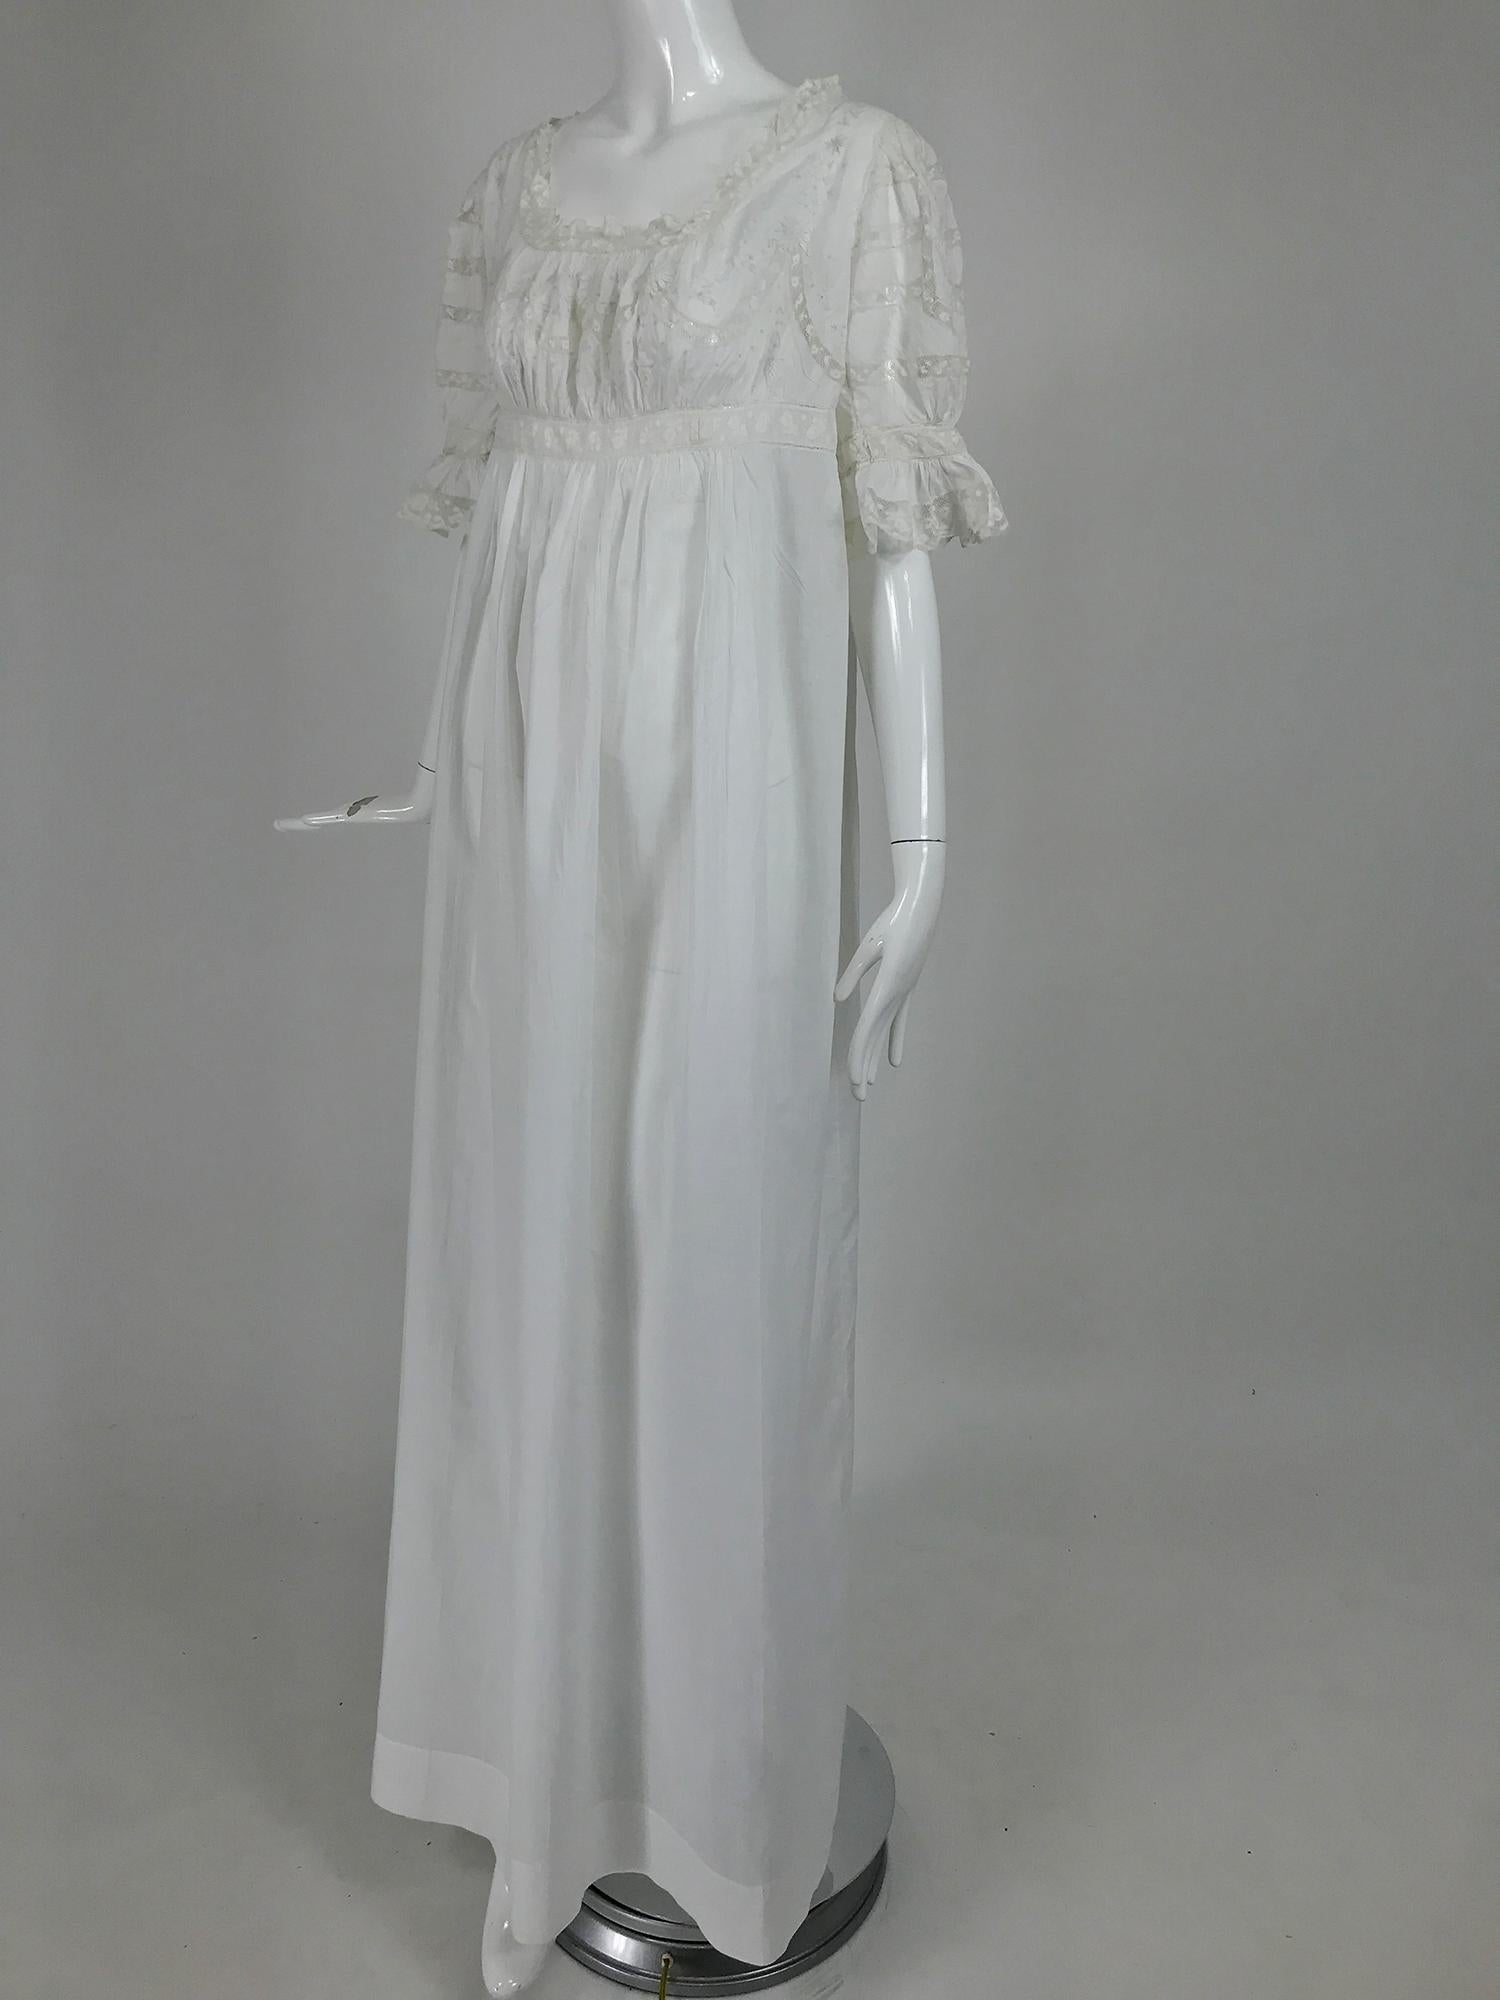 Robe victorienne en dentelle de coton batiste brodée du nom de Hattie datant du début des années 1900. Cette magnifique robe n'a jamais été portée, elle a toujours le numéro de commande écrit au crayon sur le haut du dos. Le nom de la propriétaire,